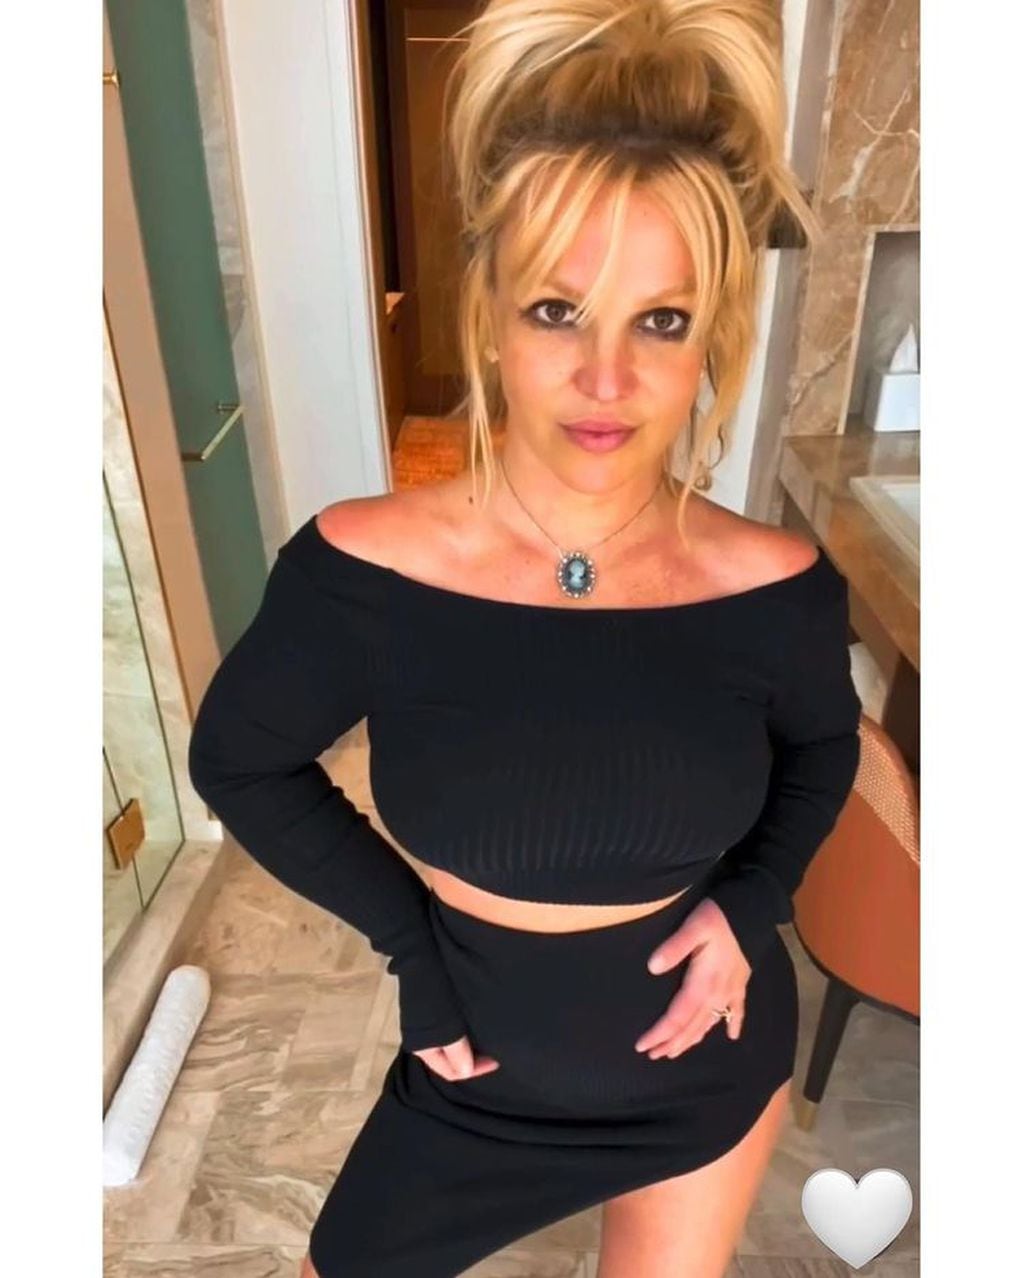 El look 'total black' y la publicación de Britney que causaron furor.